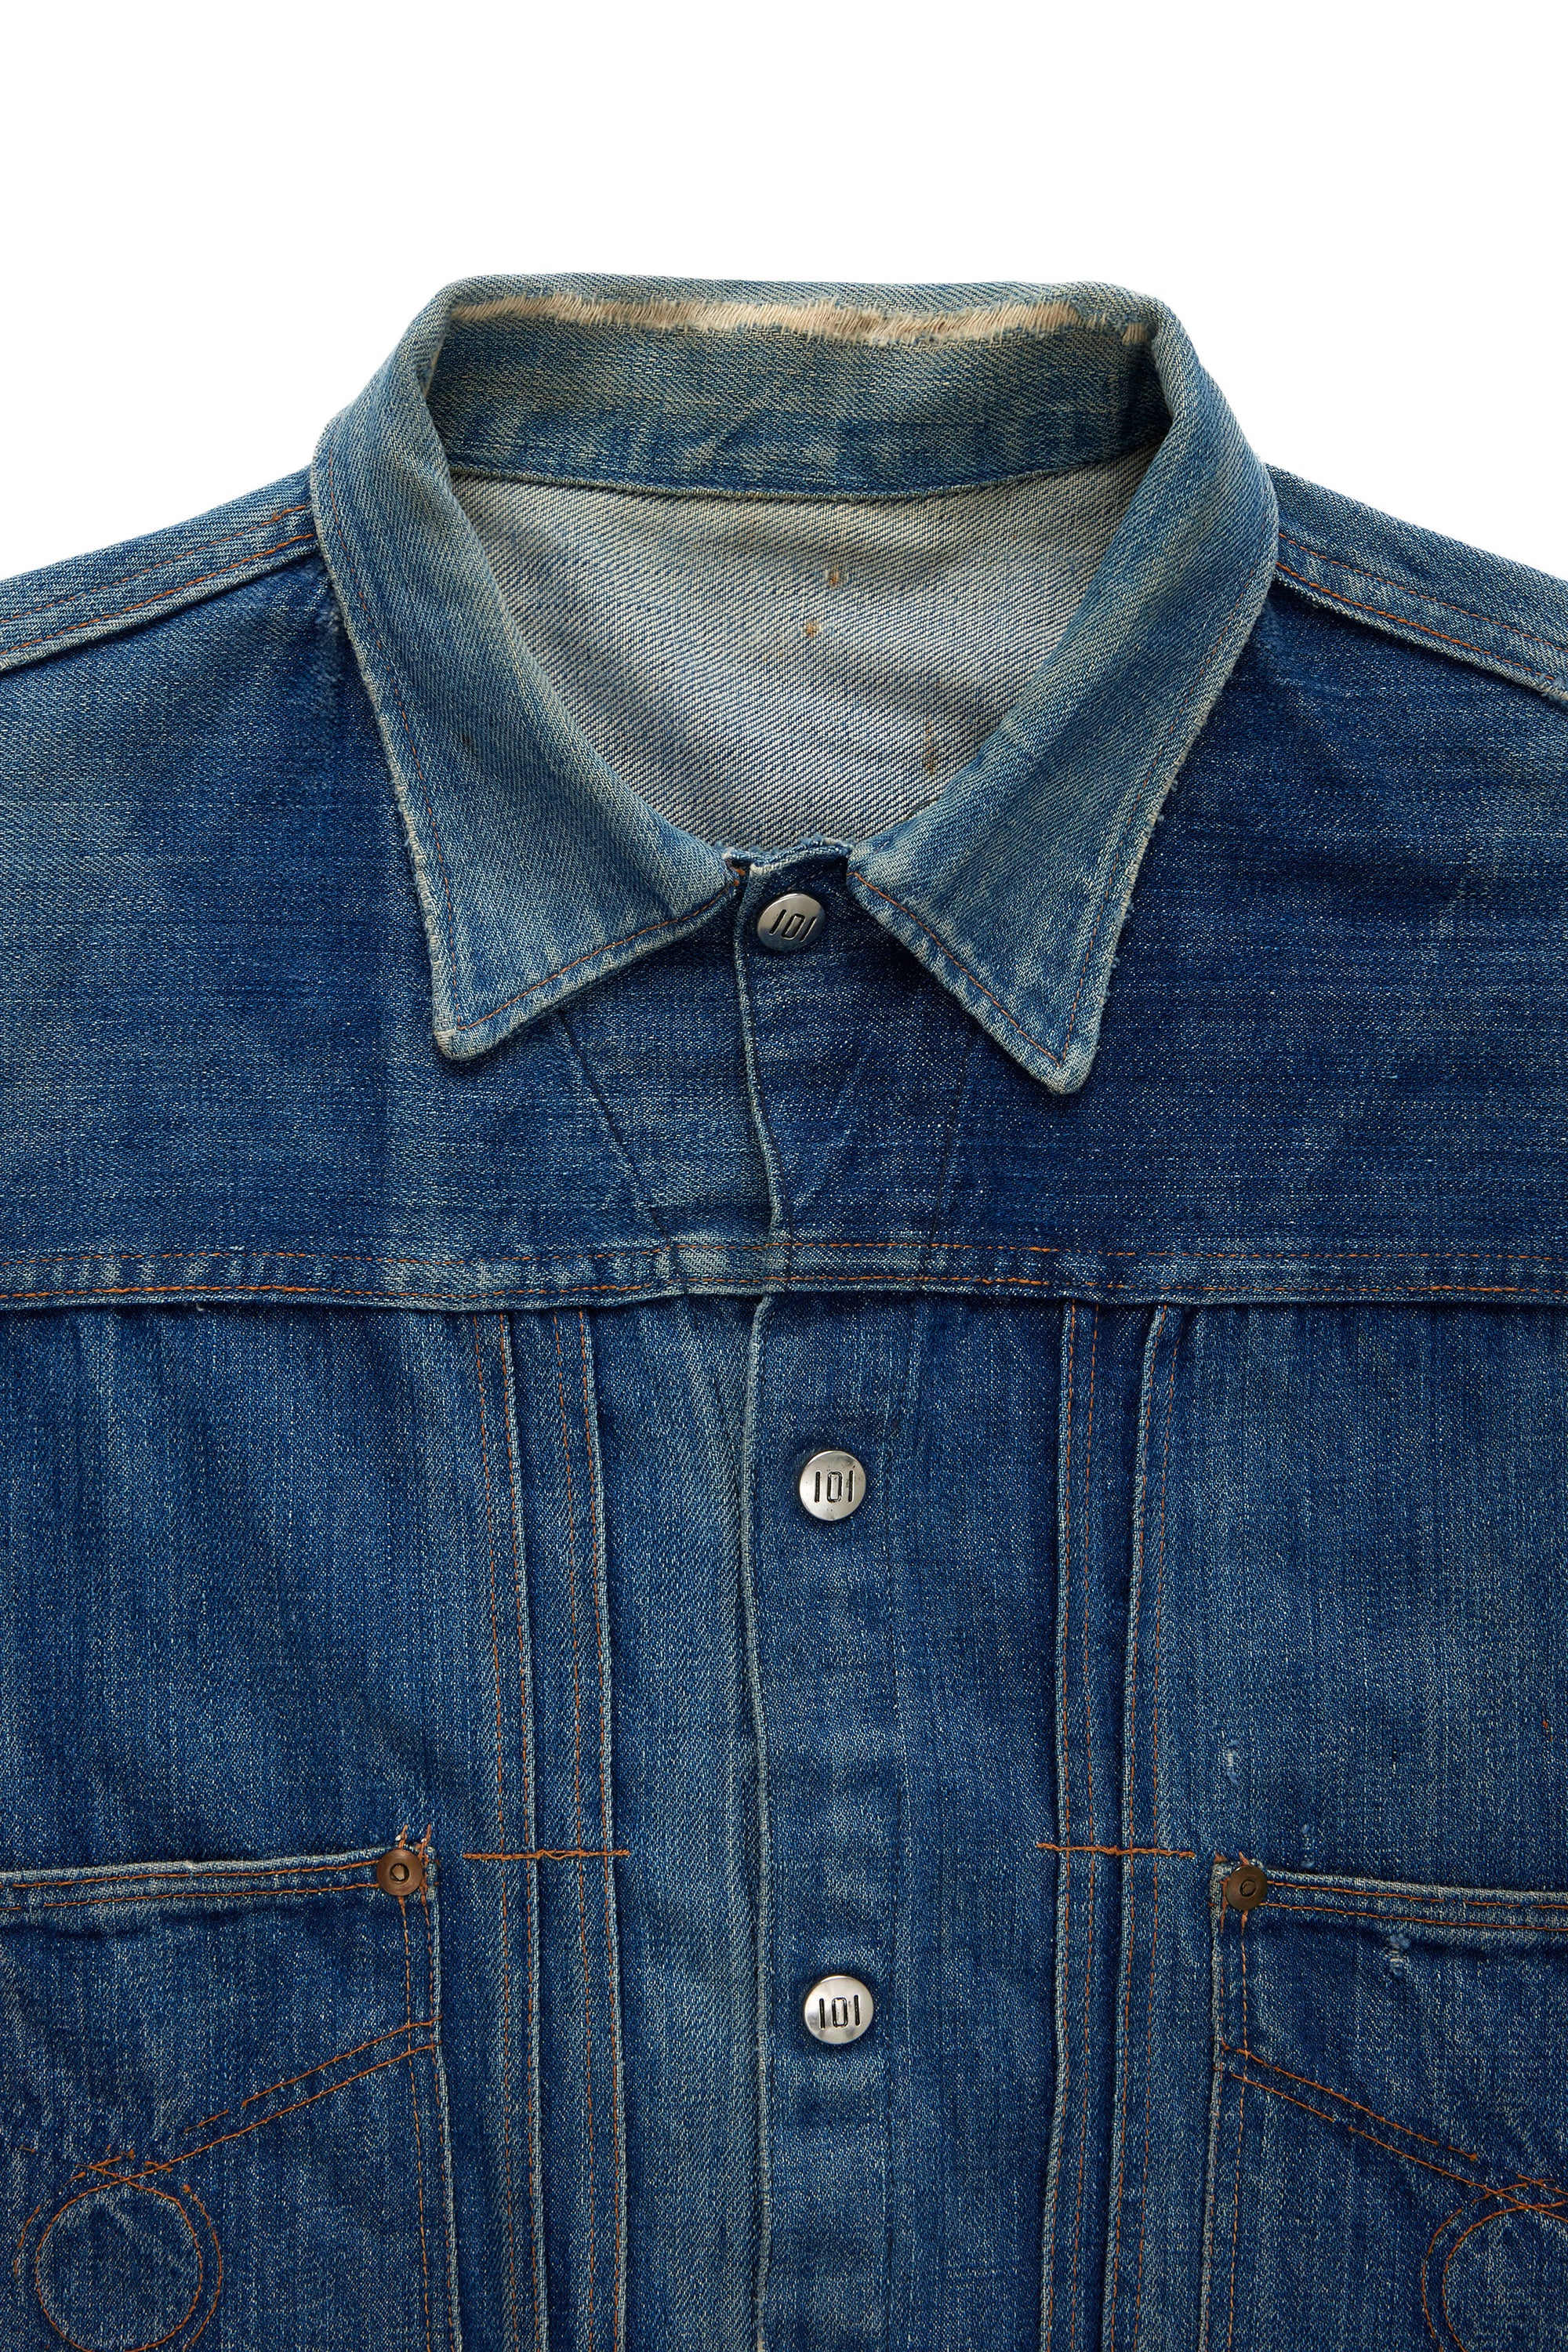 1950s Montgomery Ward Denim Jacket